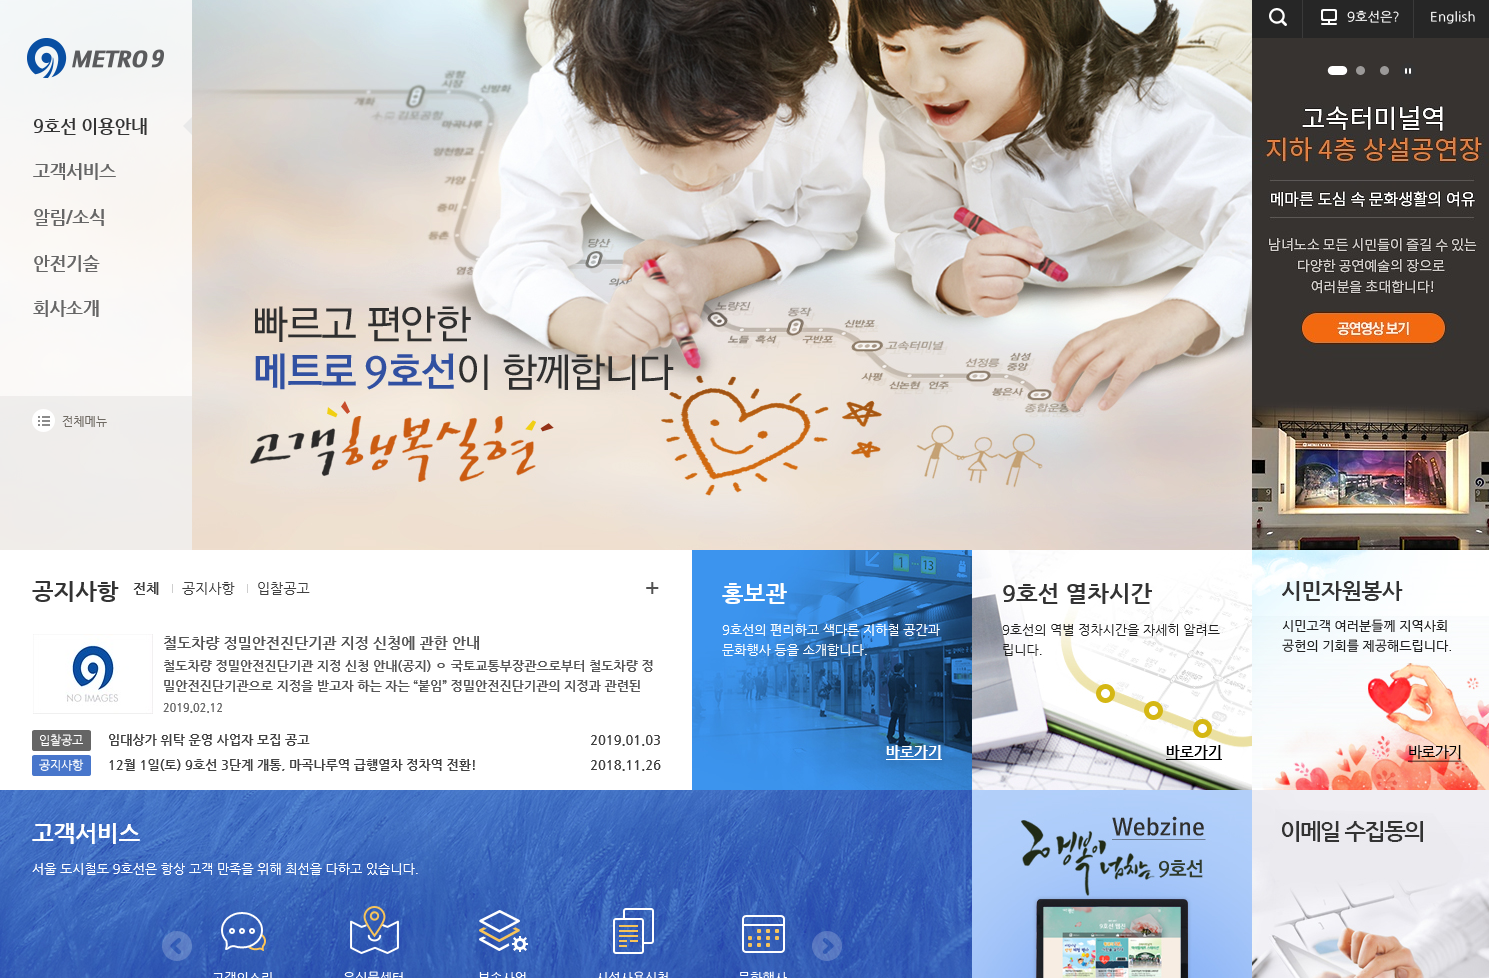 서울시 도시철도9호선 대표 홈페이지 스크릿샷